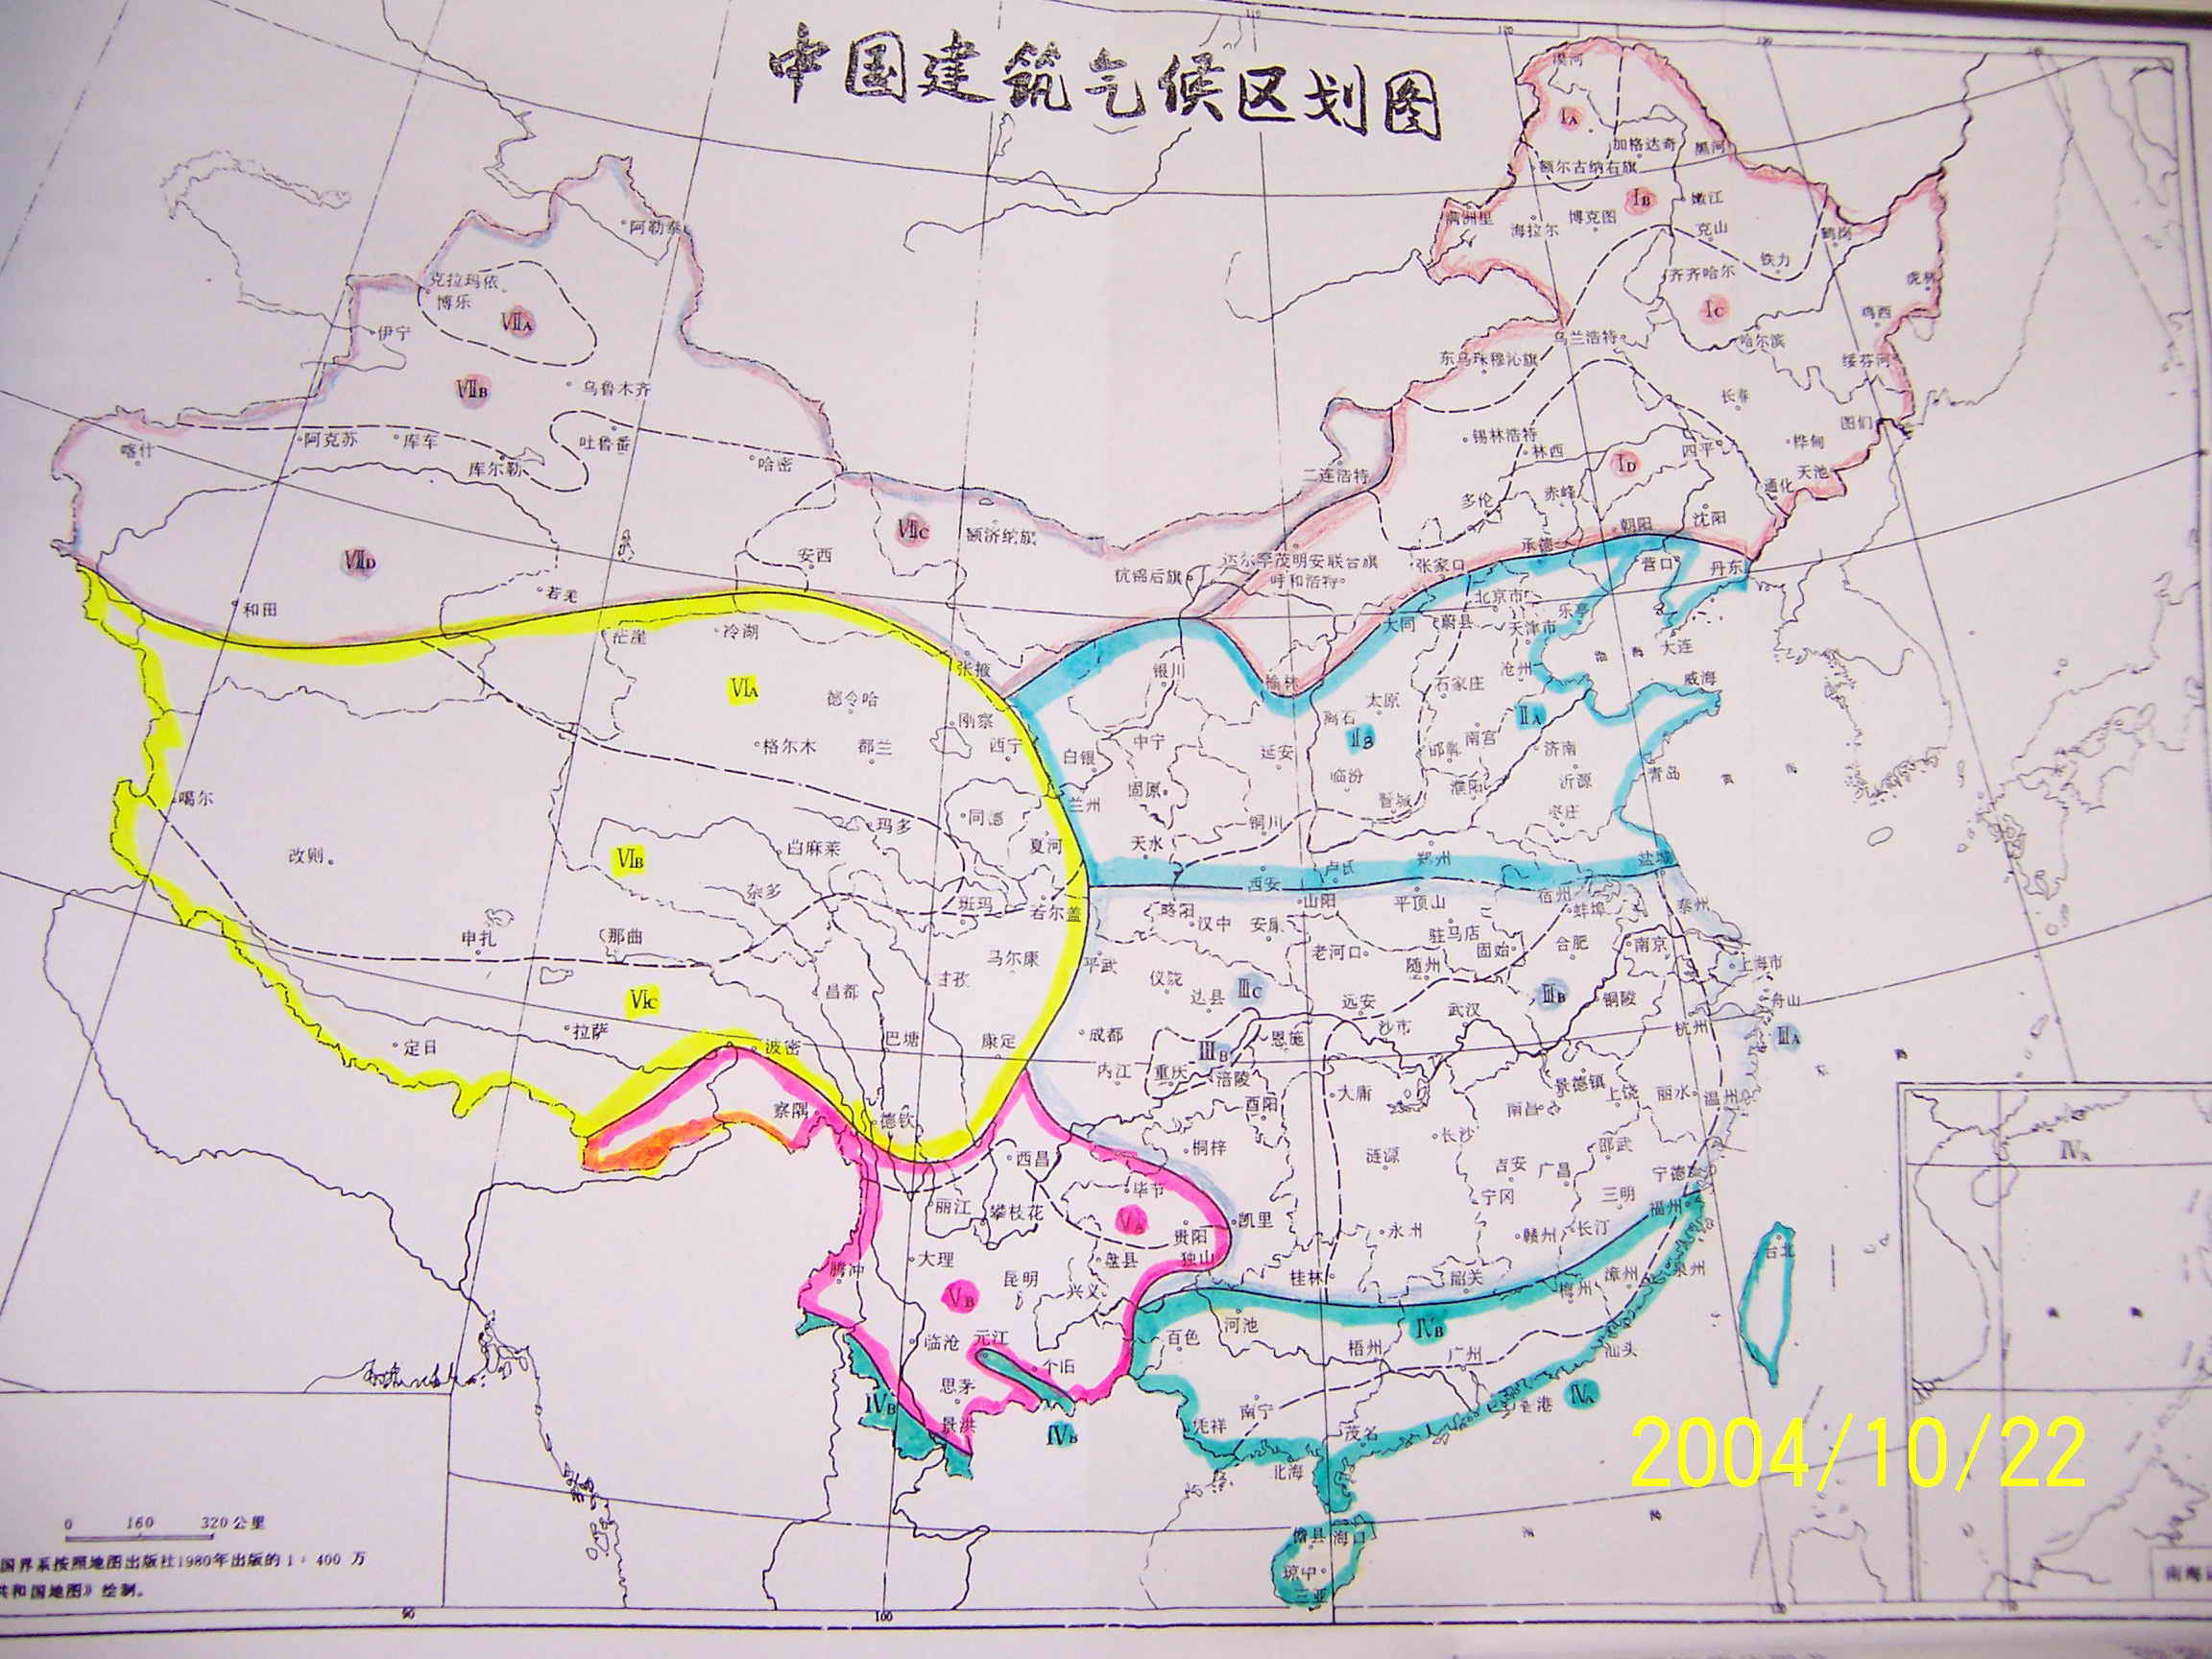 中国气候区域划分图示